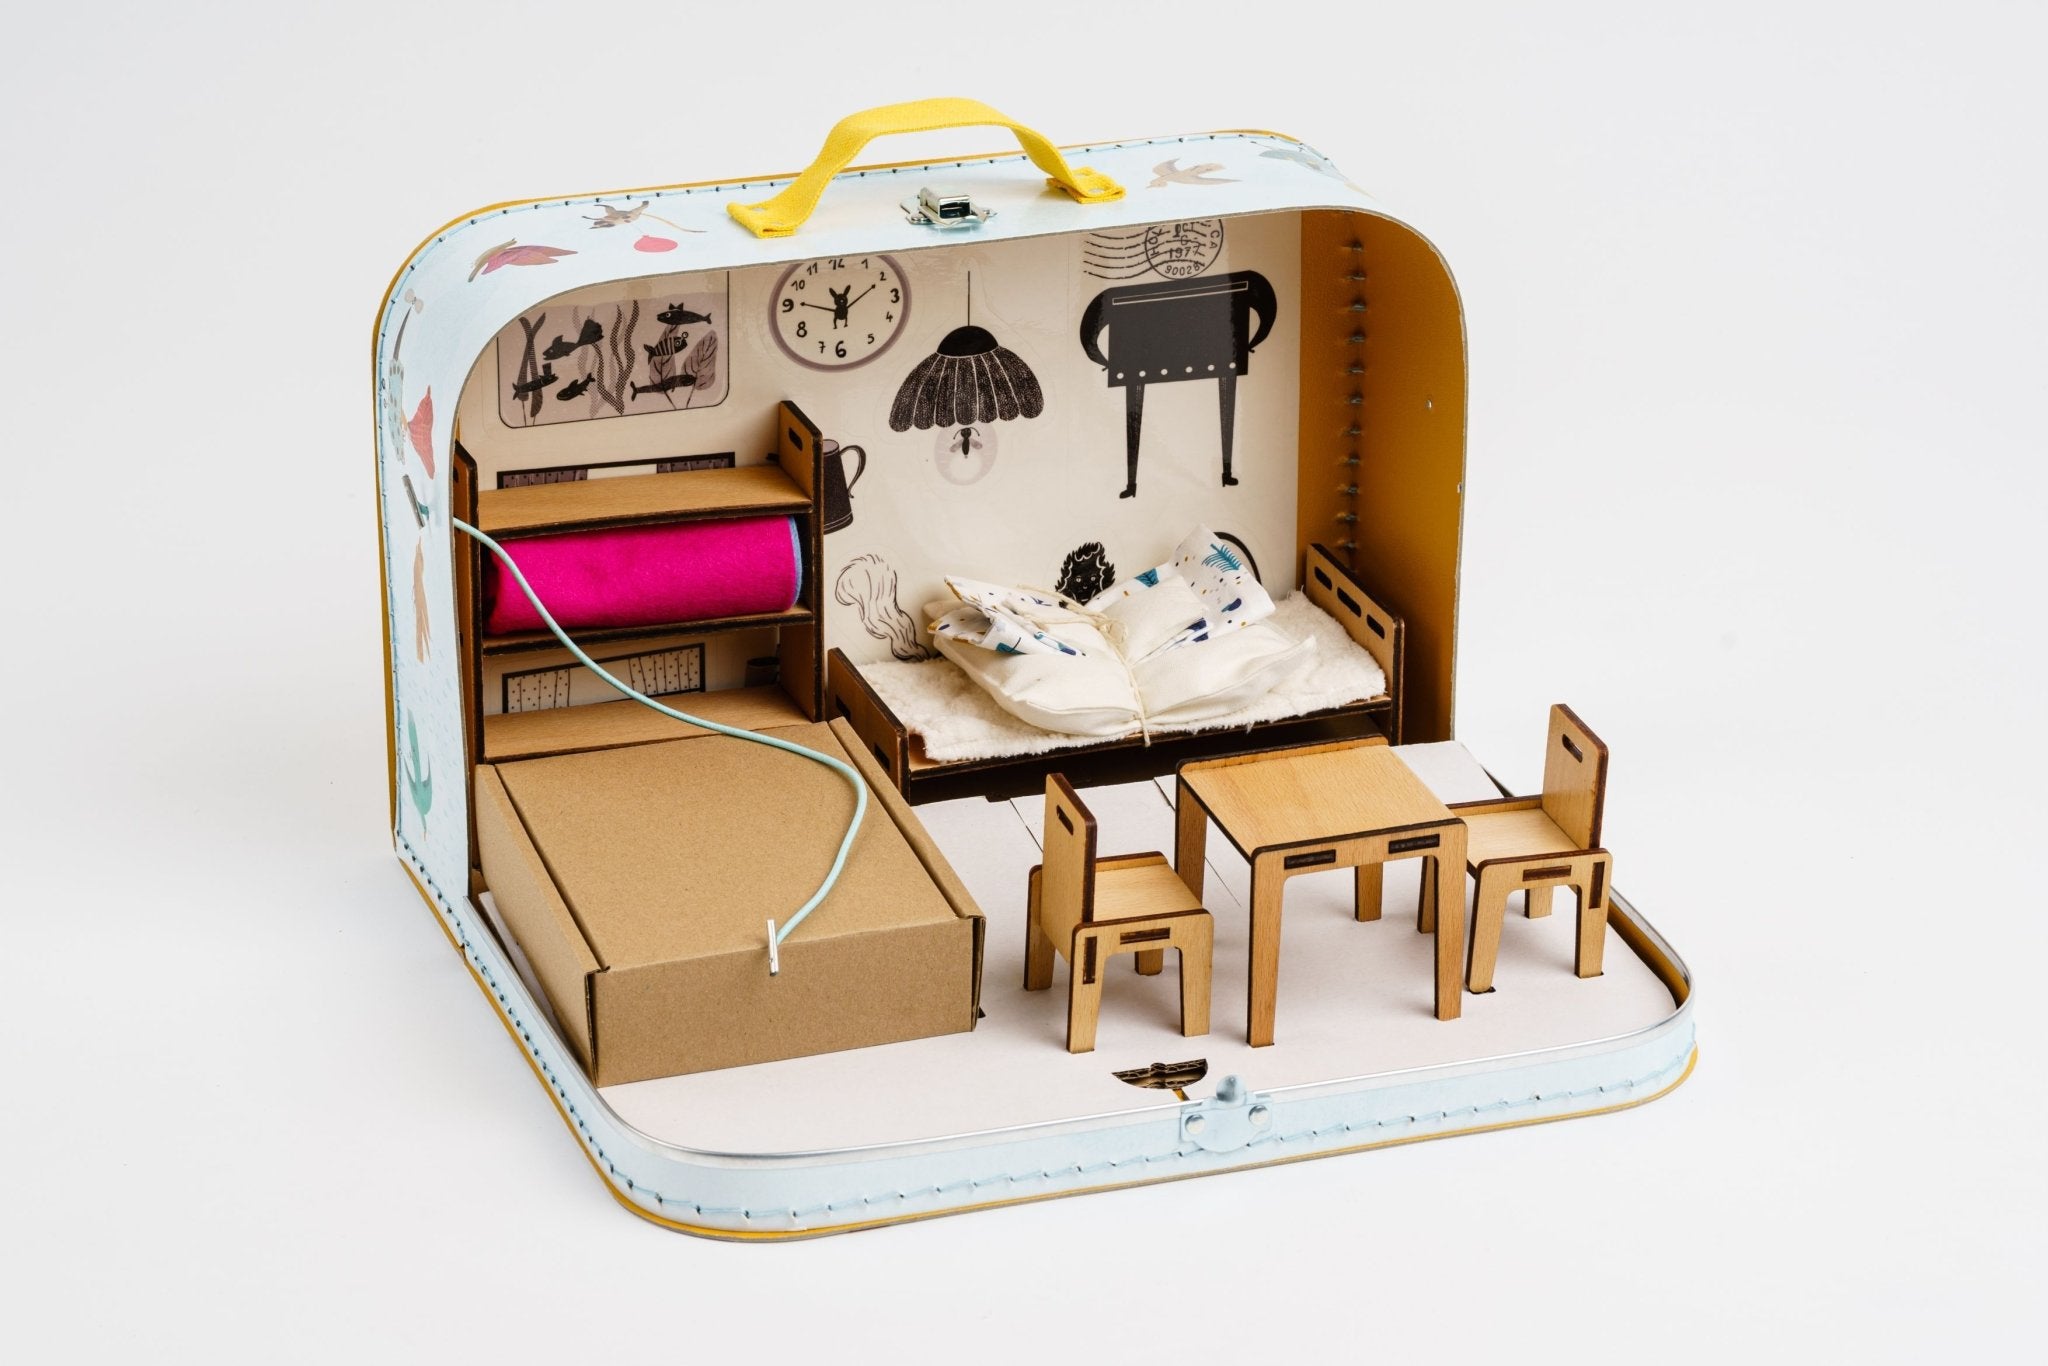 Kofferwelt 'Mein Haus' Puppenhaus - fabelhaftly.de